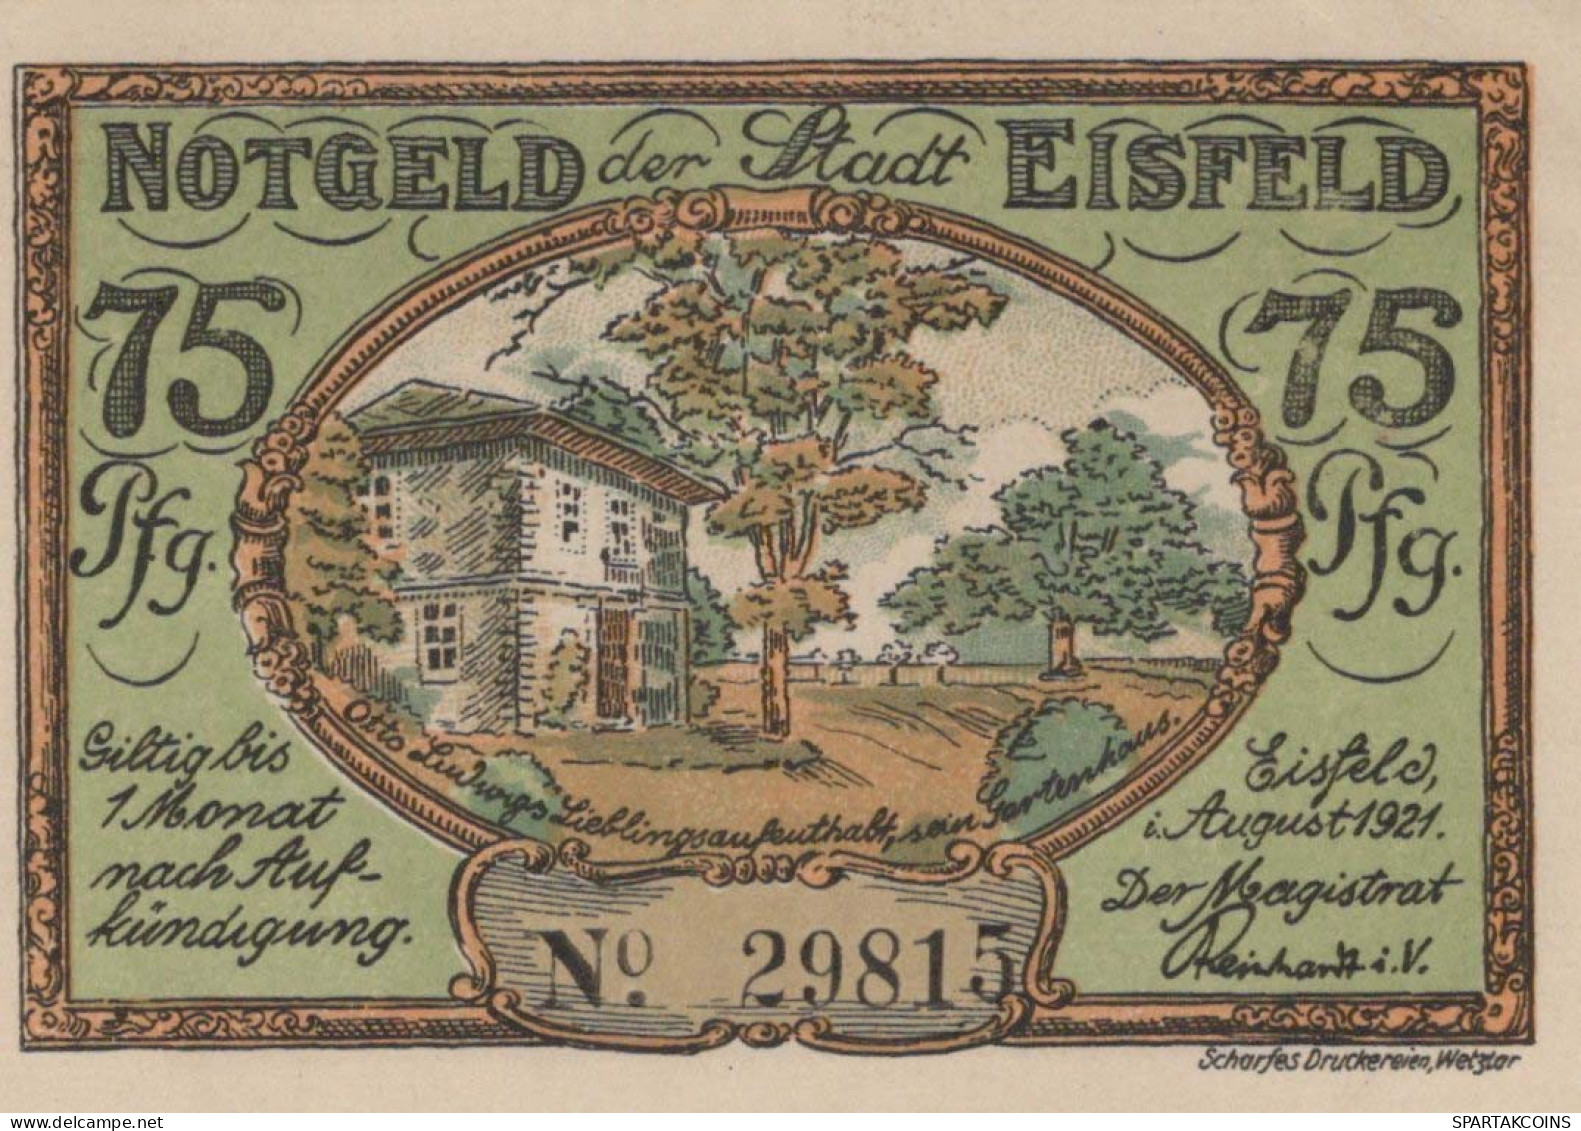 75 PFENNIG 1921 Stadt EISFELD Thuringia UNC DEUTSCHLAND Notgeld Banknote #PB148 - [11] Emisiones Locales